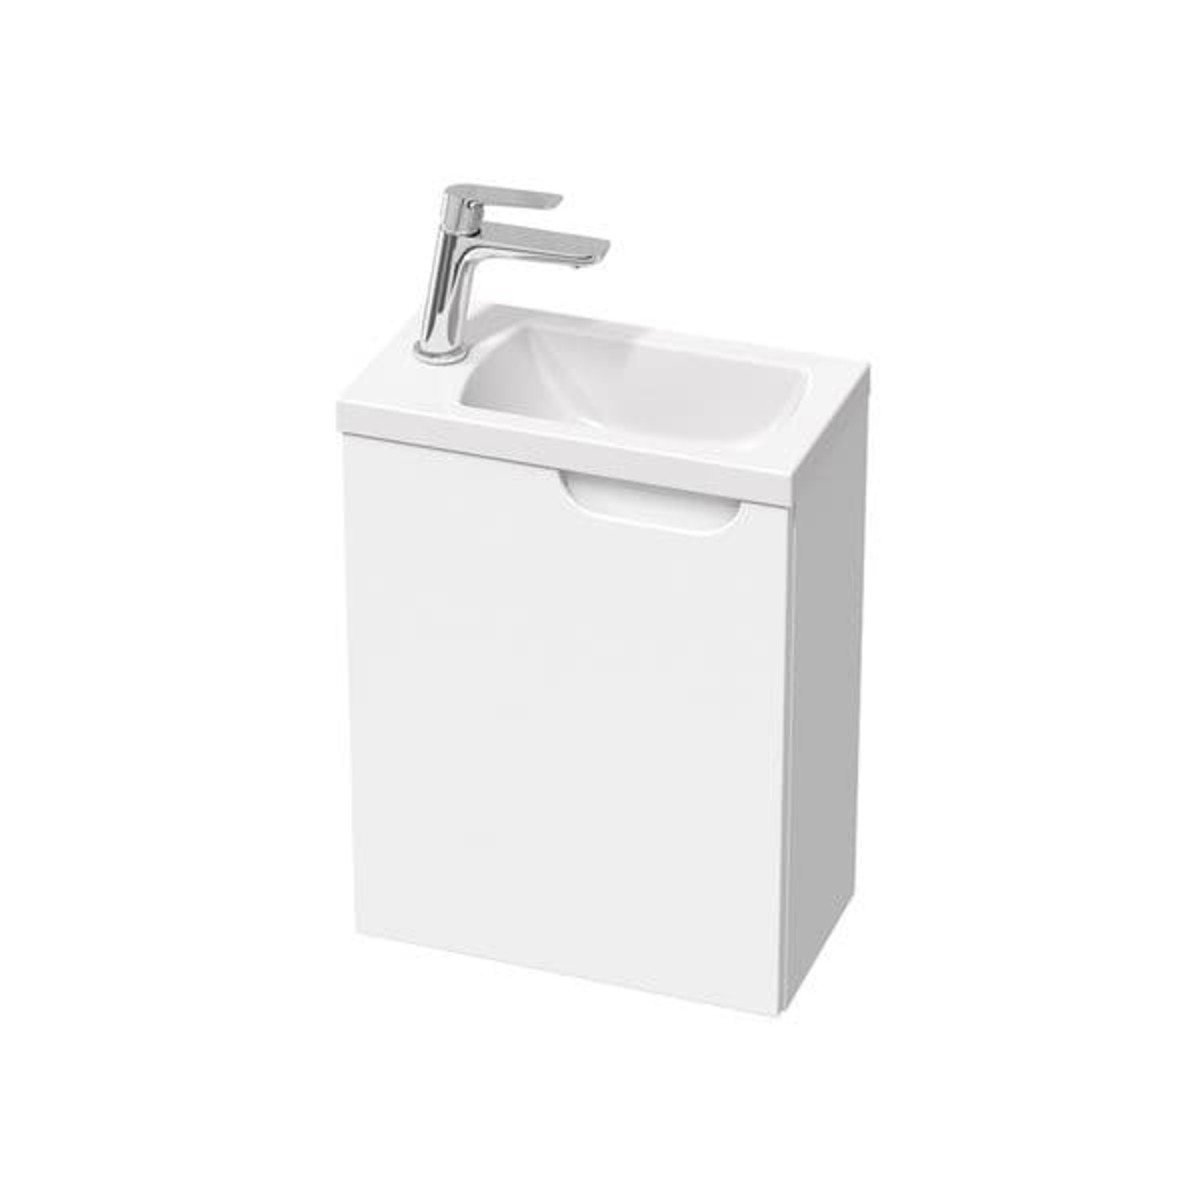 Koupelnová skříňka pod umyvadlo Ravak Classic II 40x50x22 cm bílá lesk X000001484 Ravak